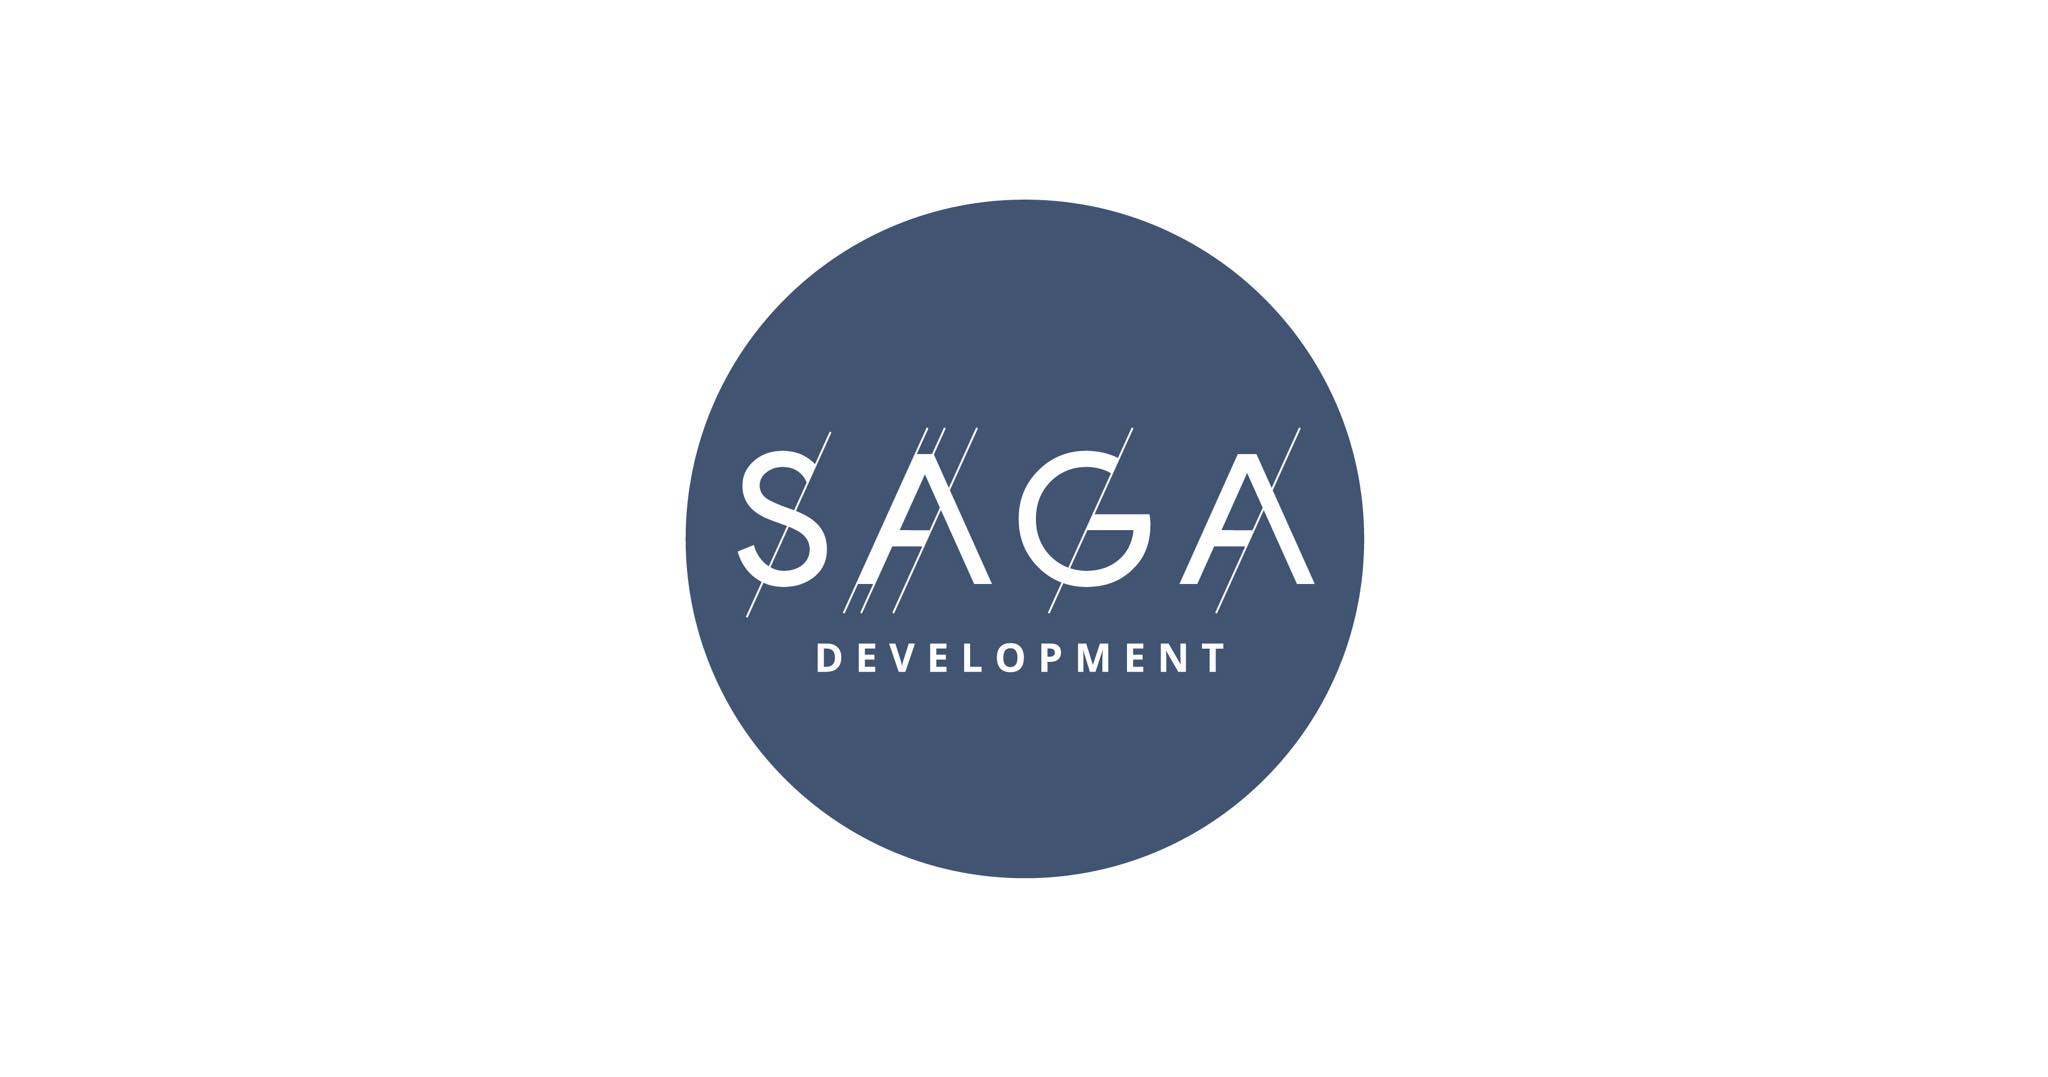 SAGA Development оспаривает арест земельных участков в суде